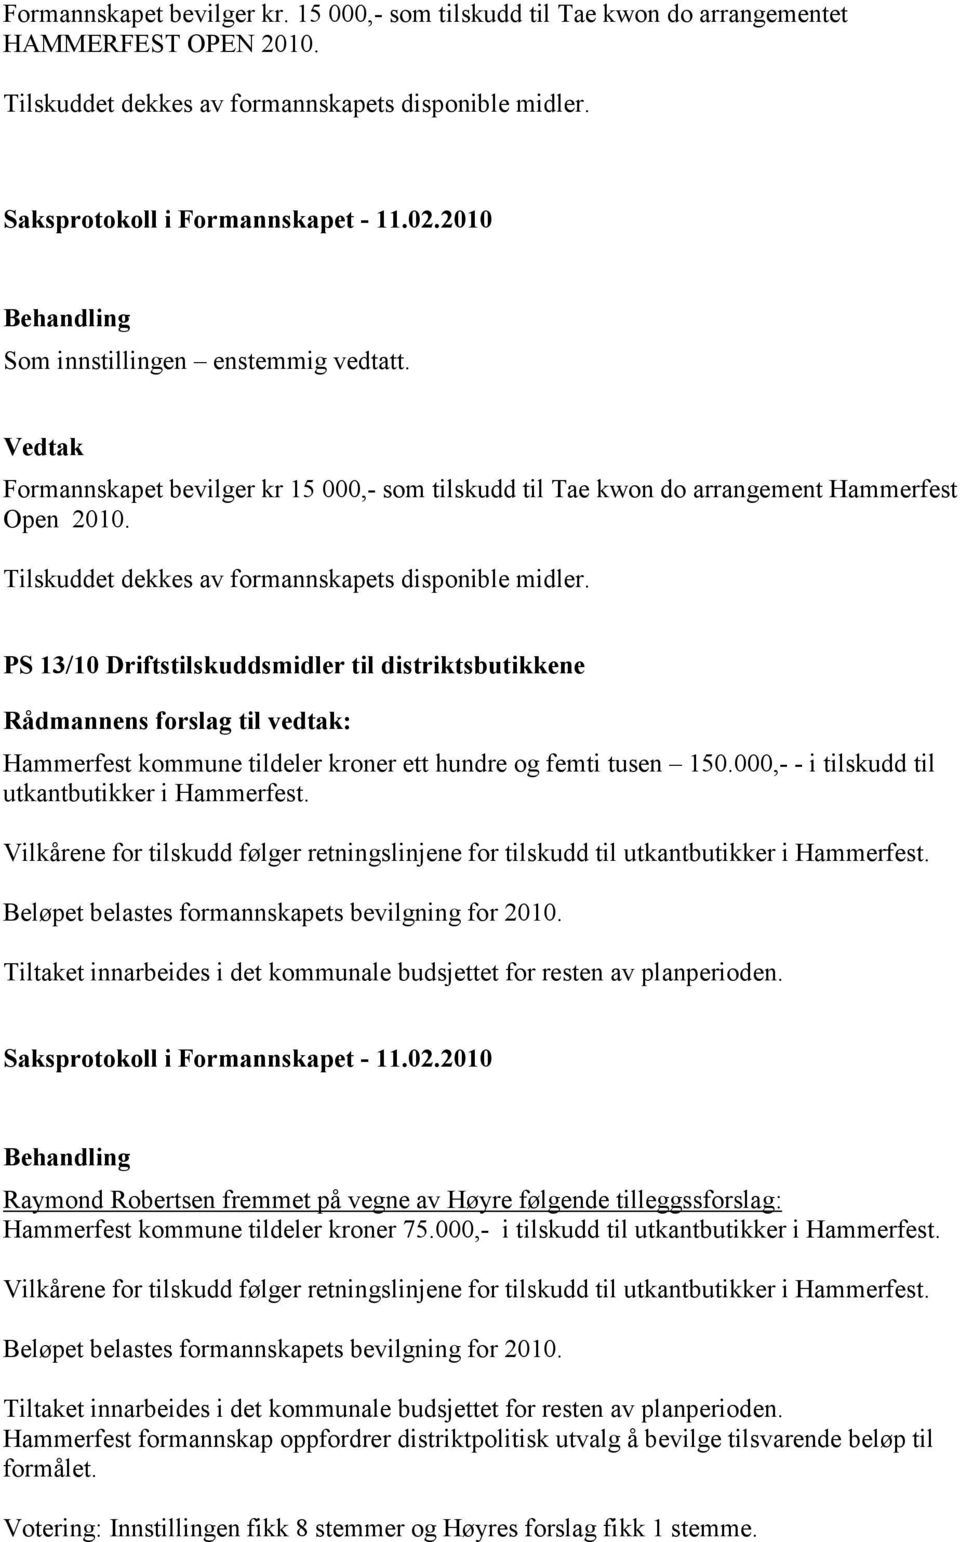 PS 13/10 Driftstilskuddsmidler til distriktsbutikkene Hammerfest kommune tildeler kroner ett hundre og femti tusen 150.000,- - i tilskudd til utkantbutikker i Hammerfest.